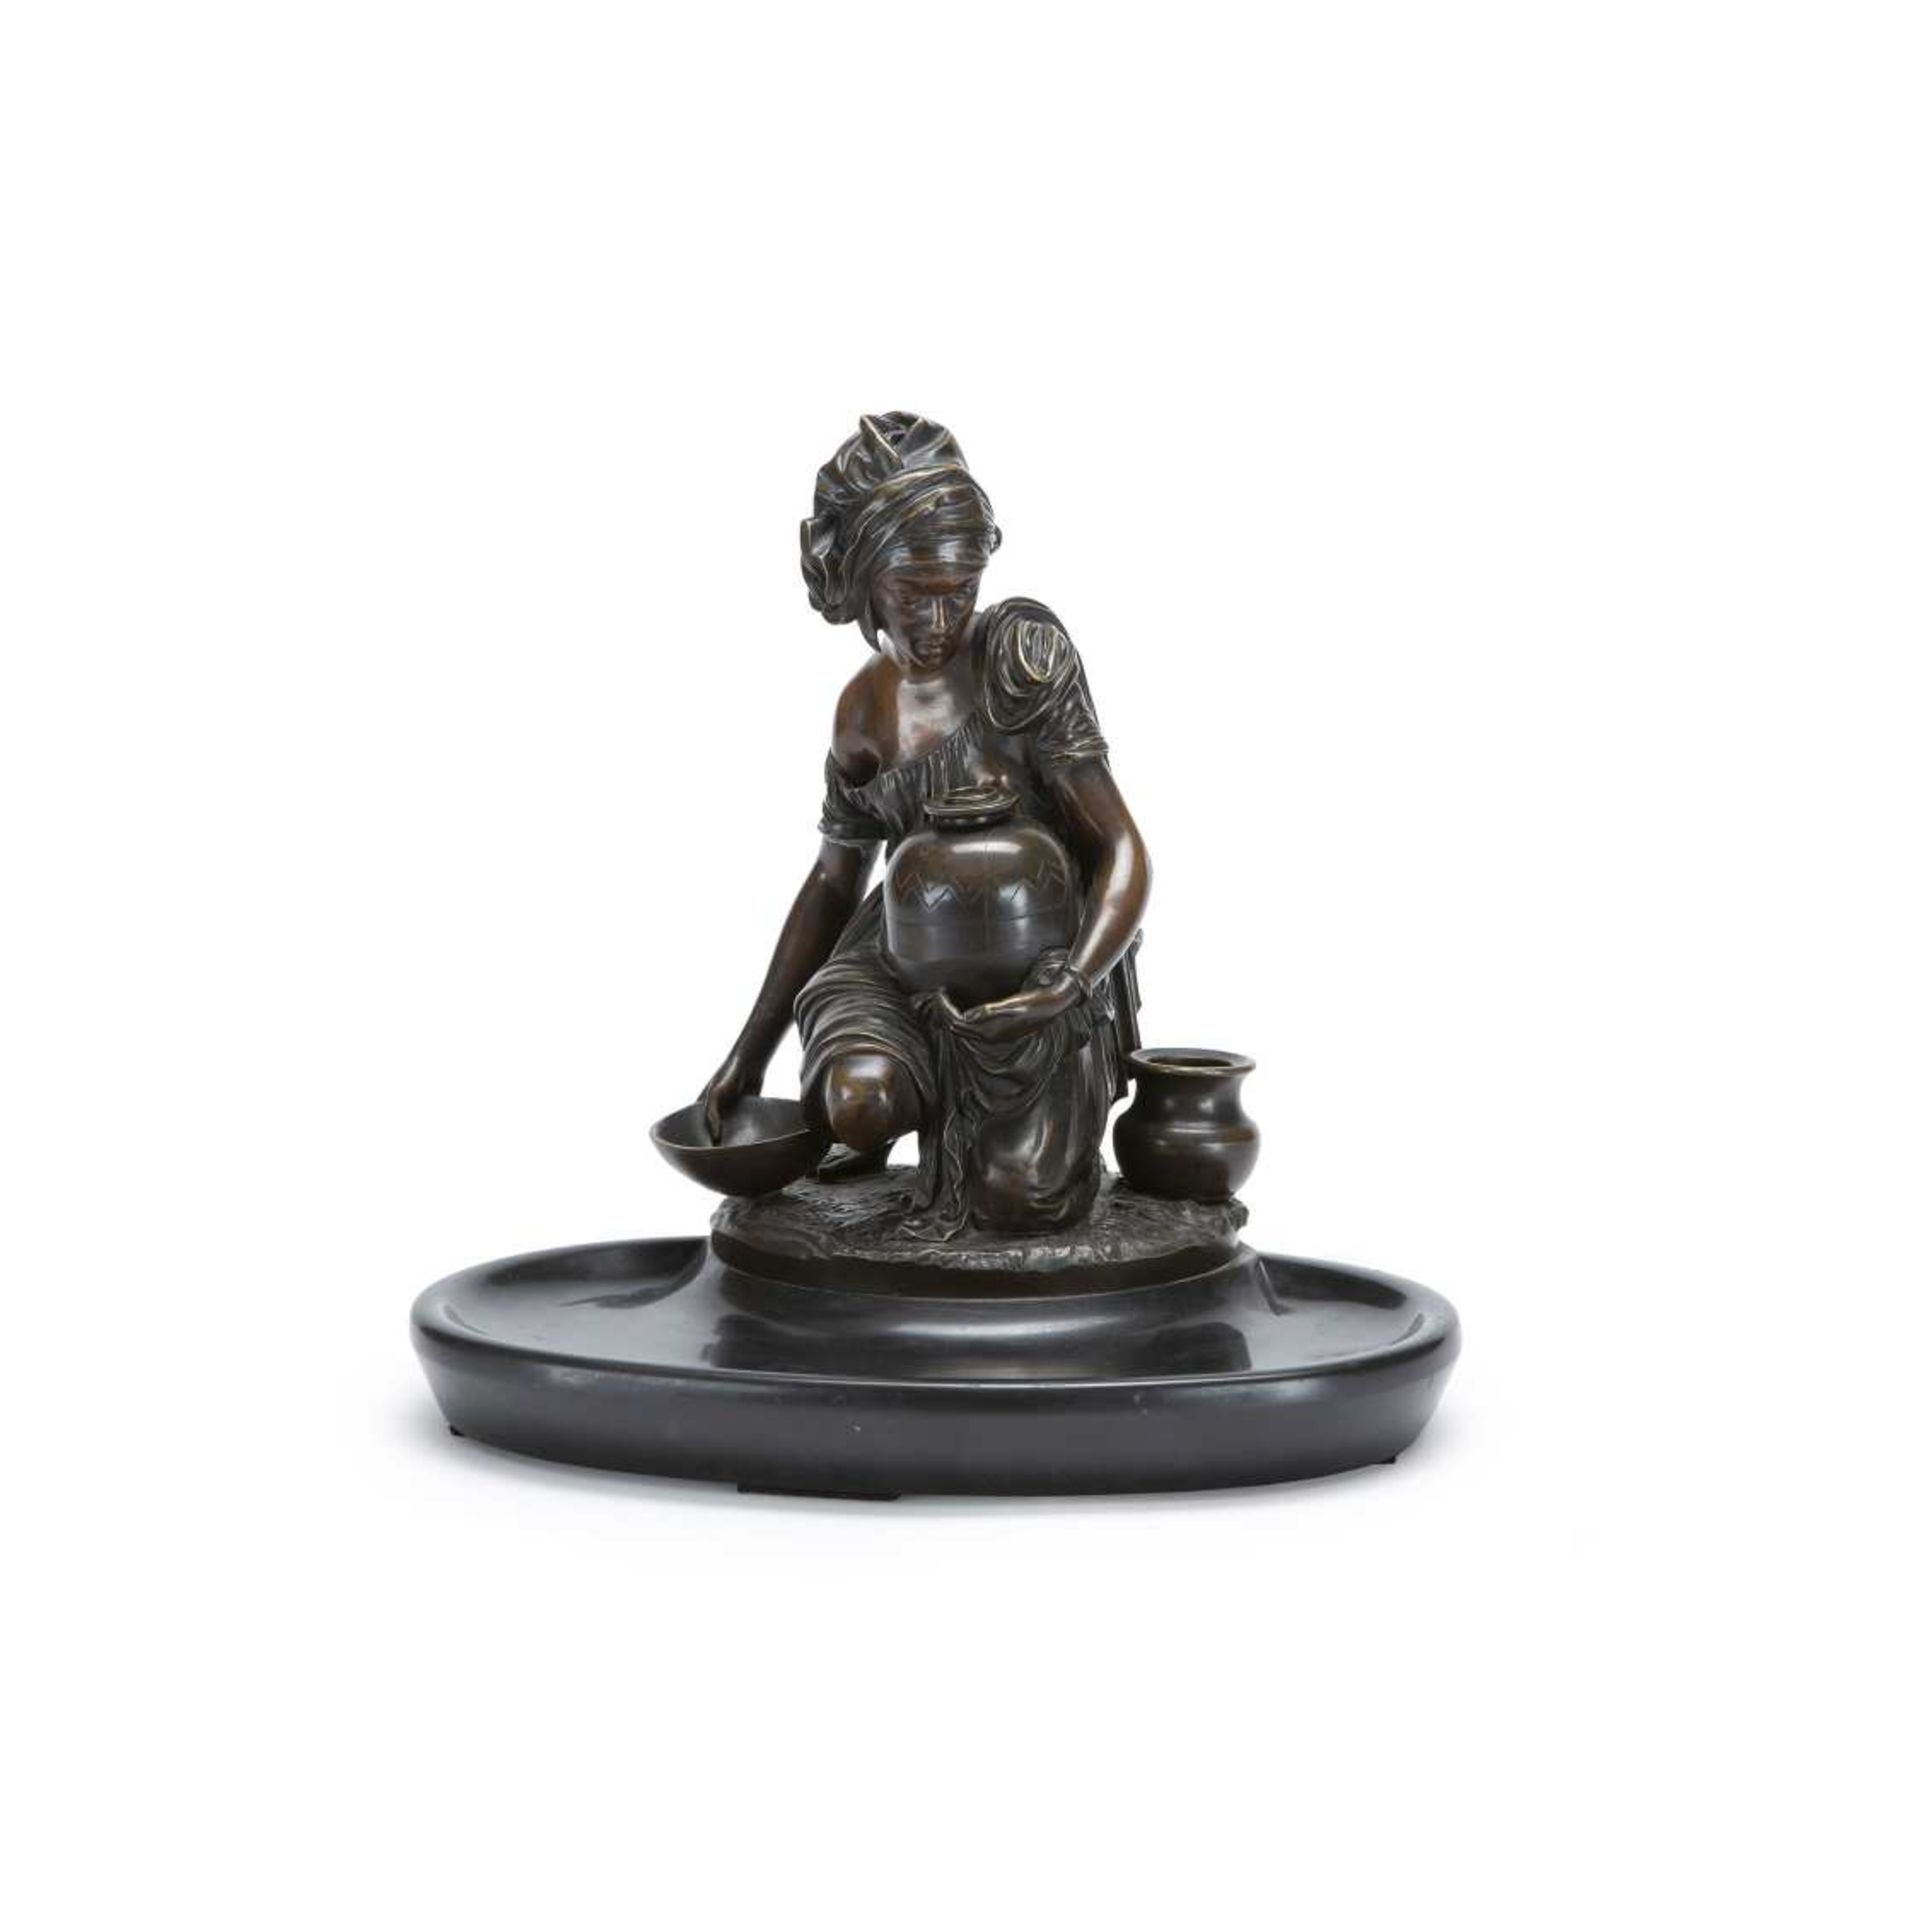 VIDE-POCHES "À LA PORTEUSE D'EAU" (FIN DU XIXE SIÈCLE) en bronze à patine brune, orné d'une jeune